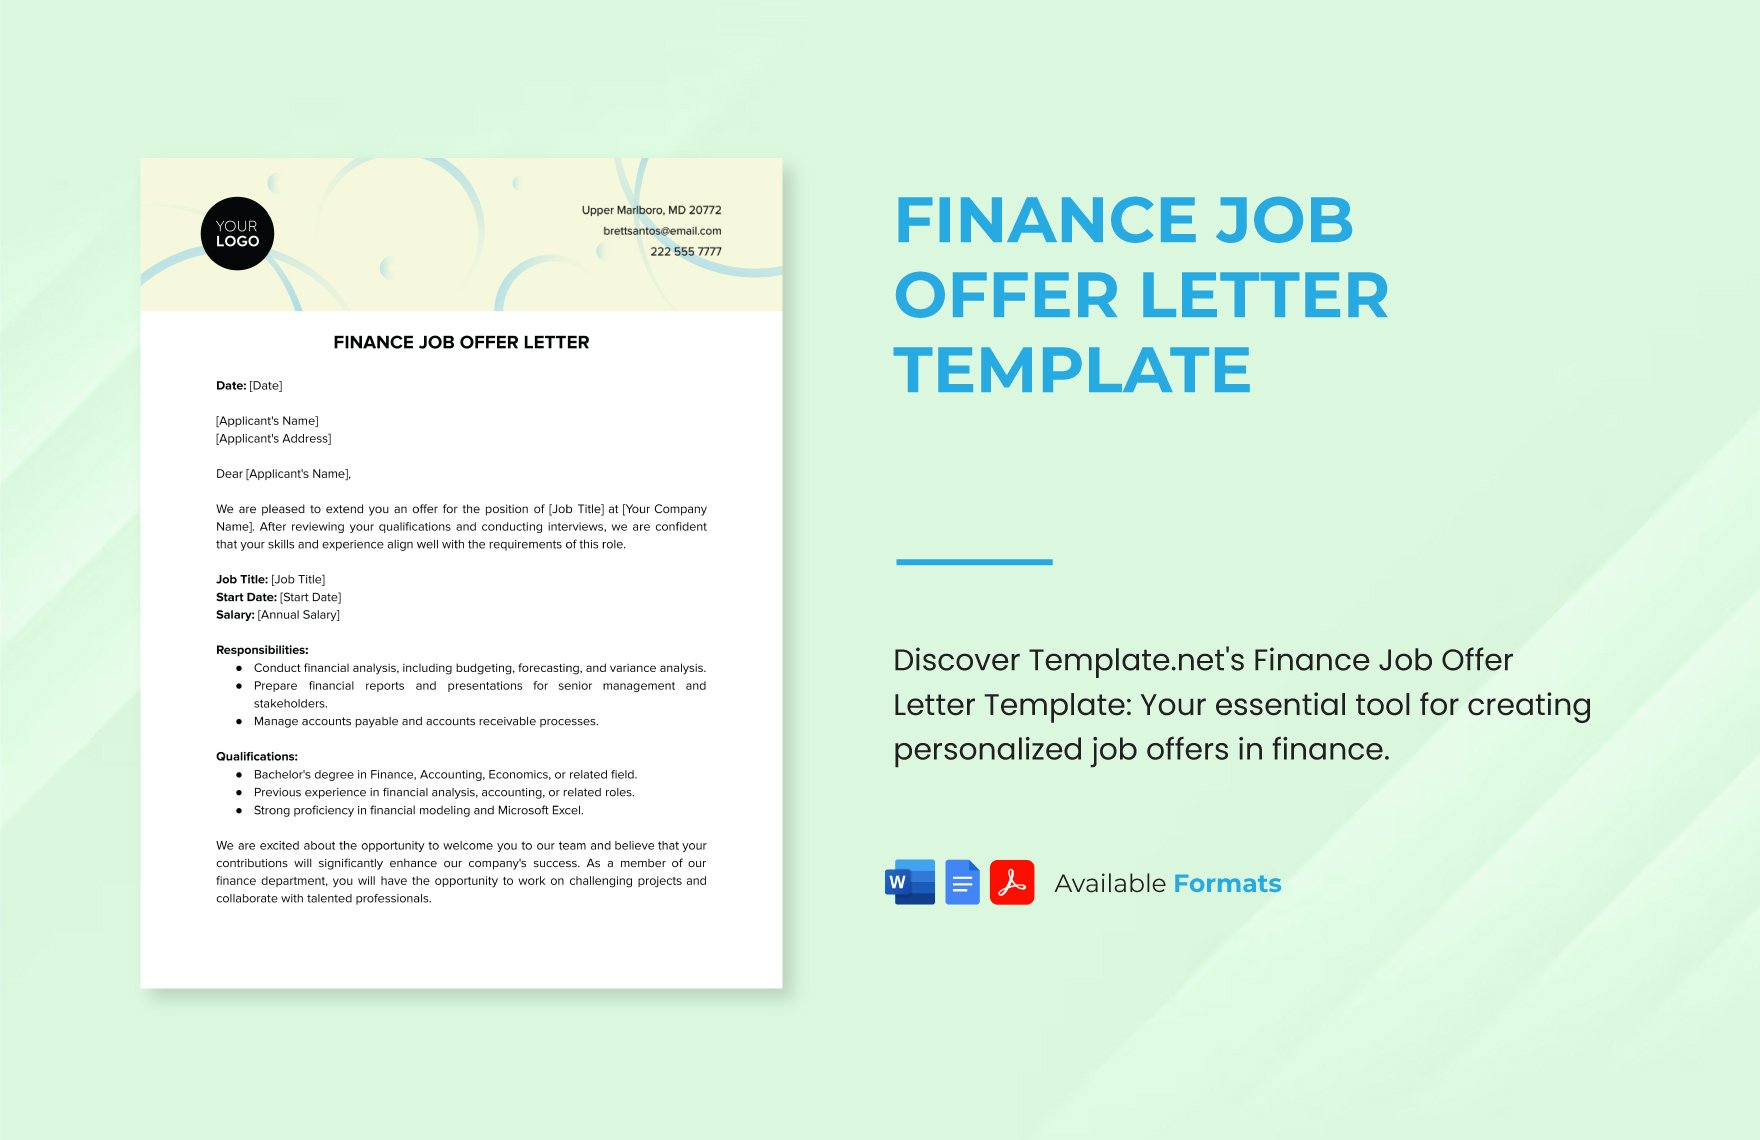 Finance Job Offer Letter Template